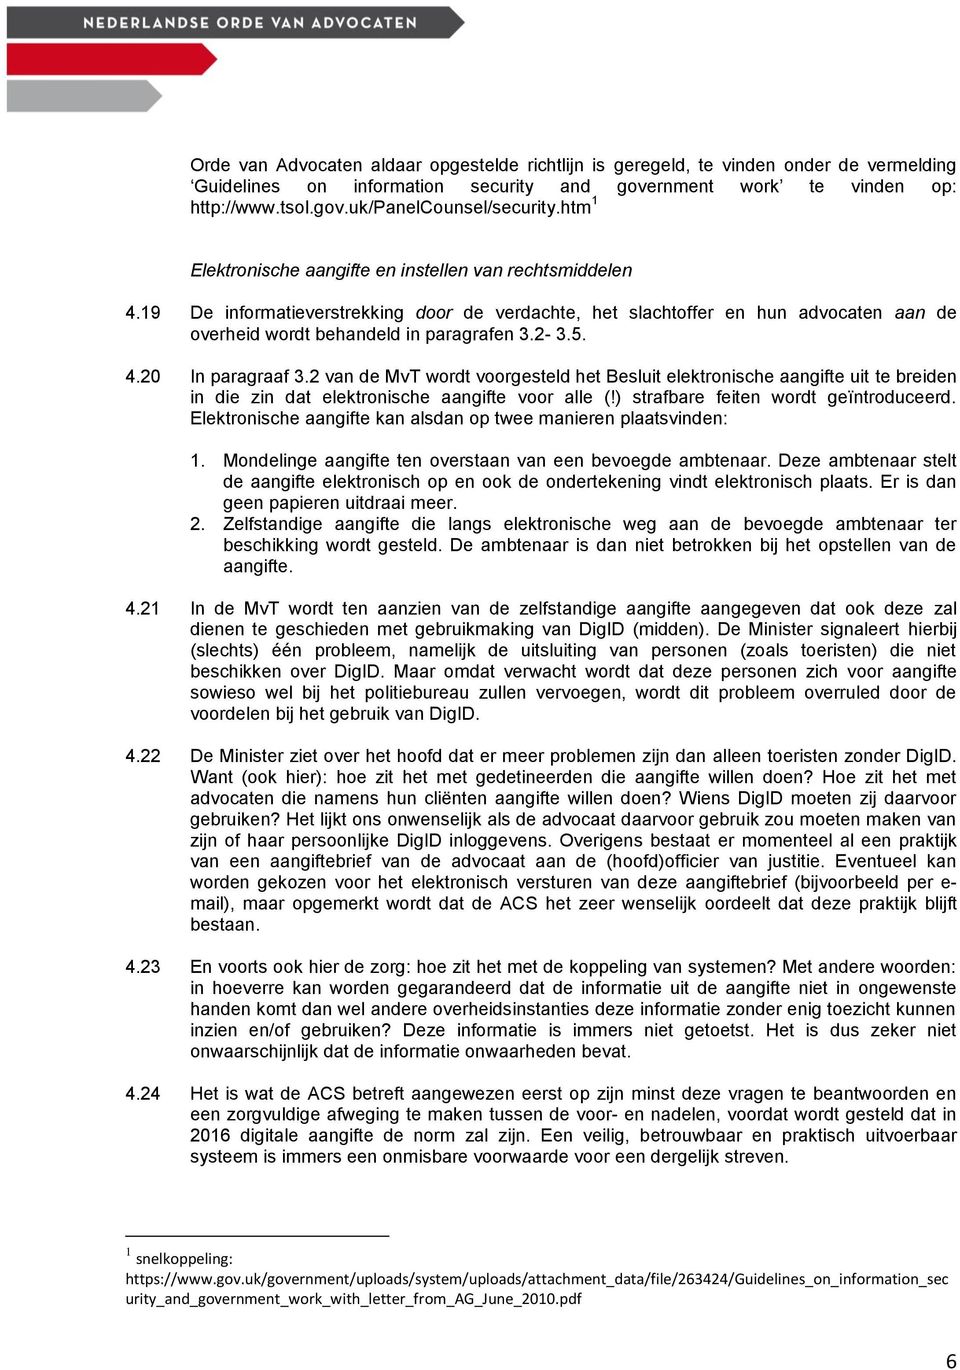 4.20 In paragraaf 3.2 van de MvT wordt voorgesteld het Besluit elektronische aangifte uit te breiden in die zin dat elektronische aangifte voor alle (!) strafbare feiten wordt geïntroduceerd.